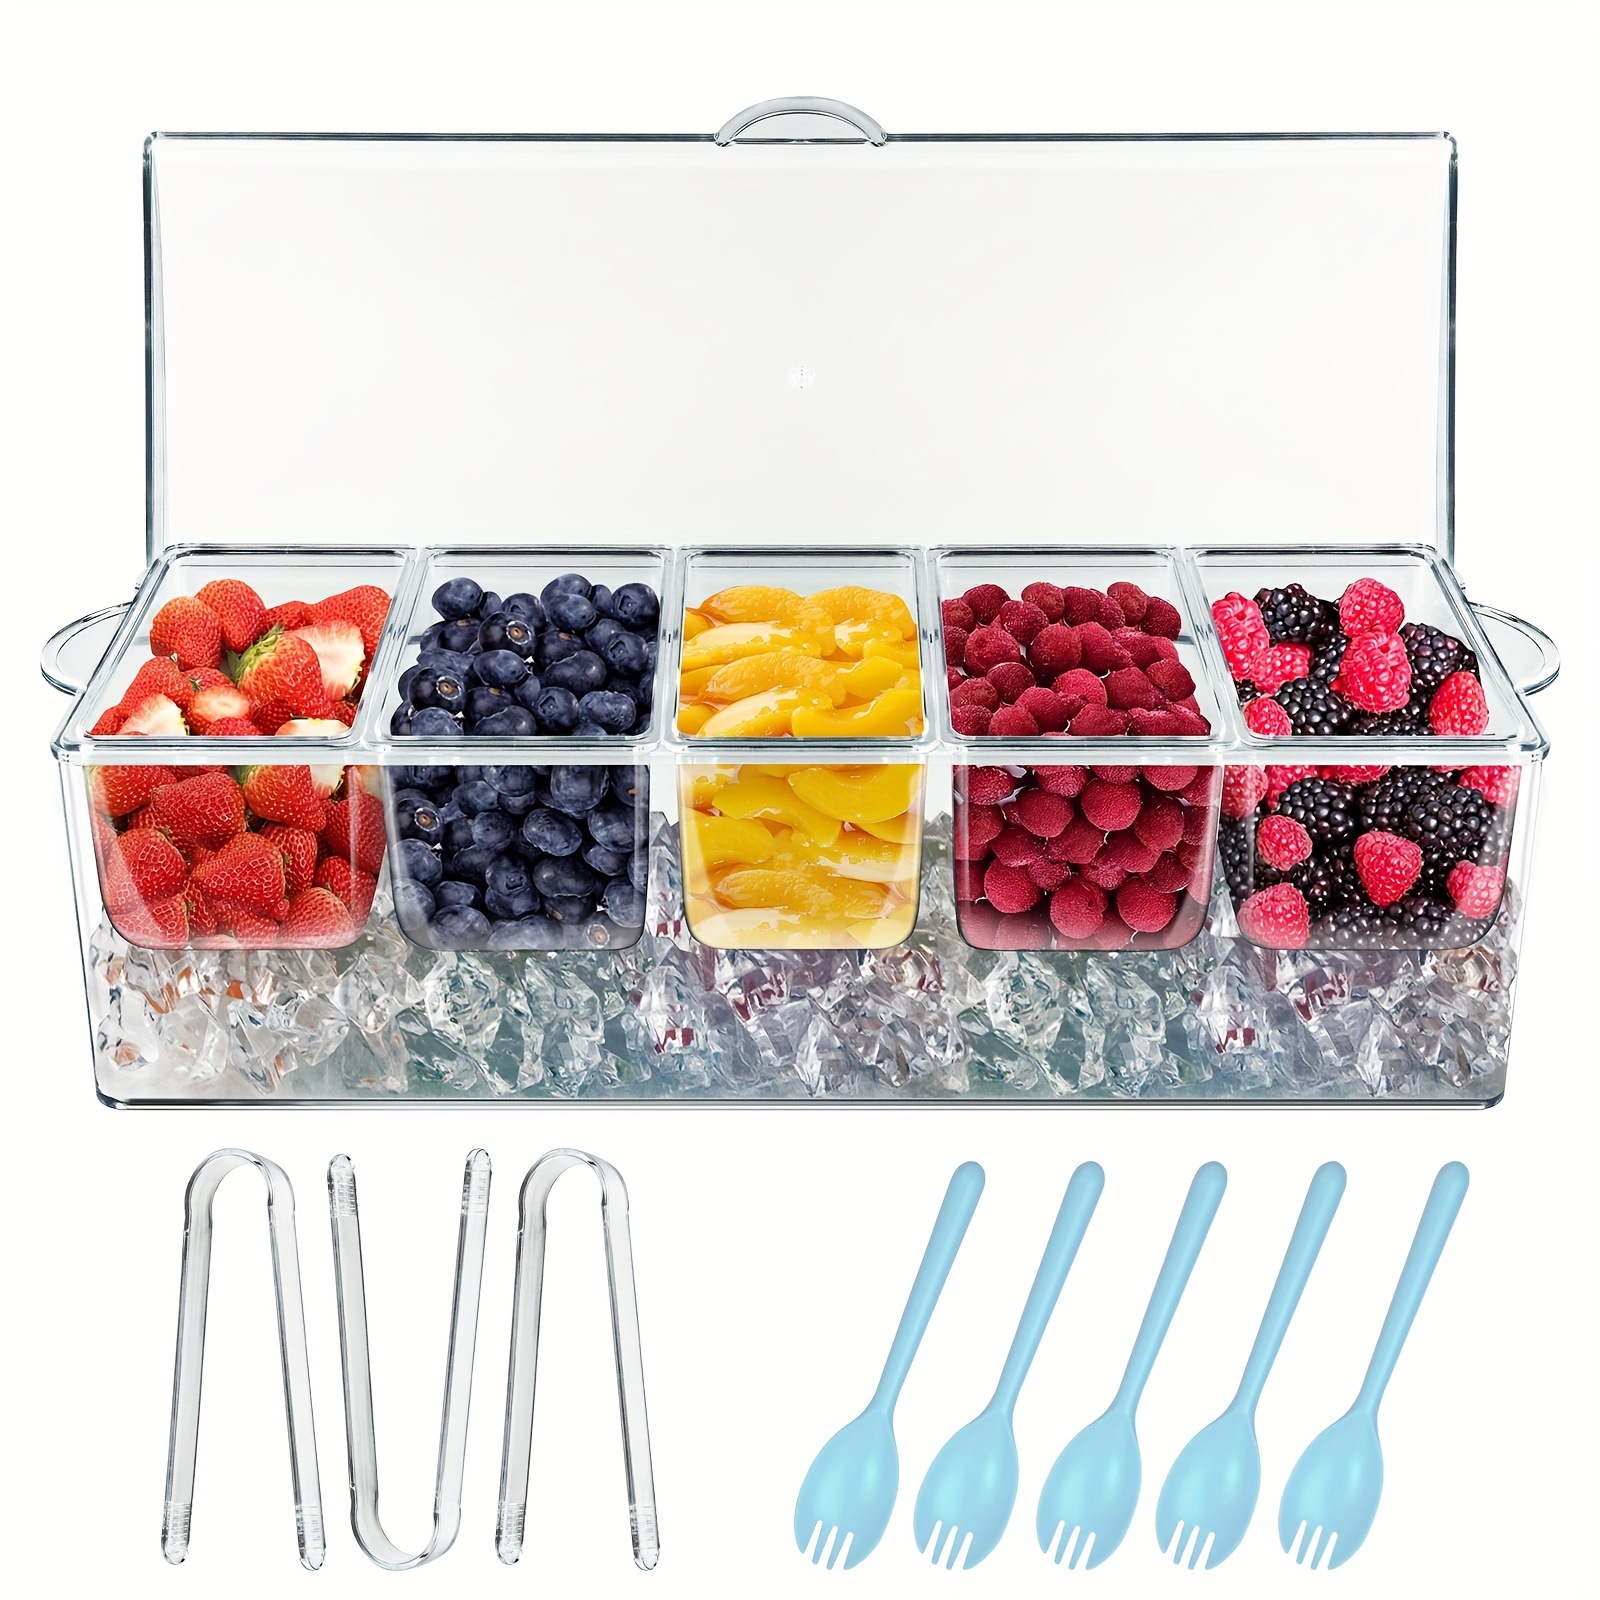 5 bandejas rectangulares de plástico transparente, bandeja de plástico  resistente de 10 x 14 pulgadas, bandeja de alimentos, bandejas decorativas  para